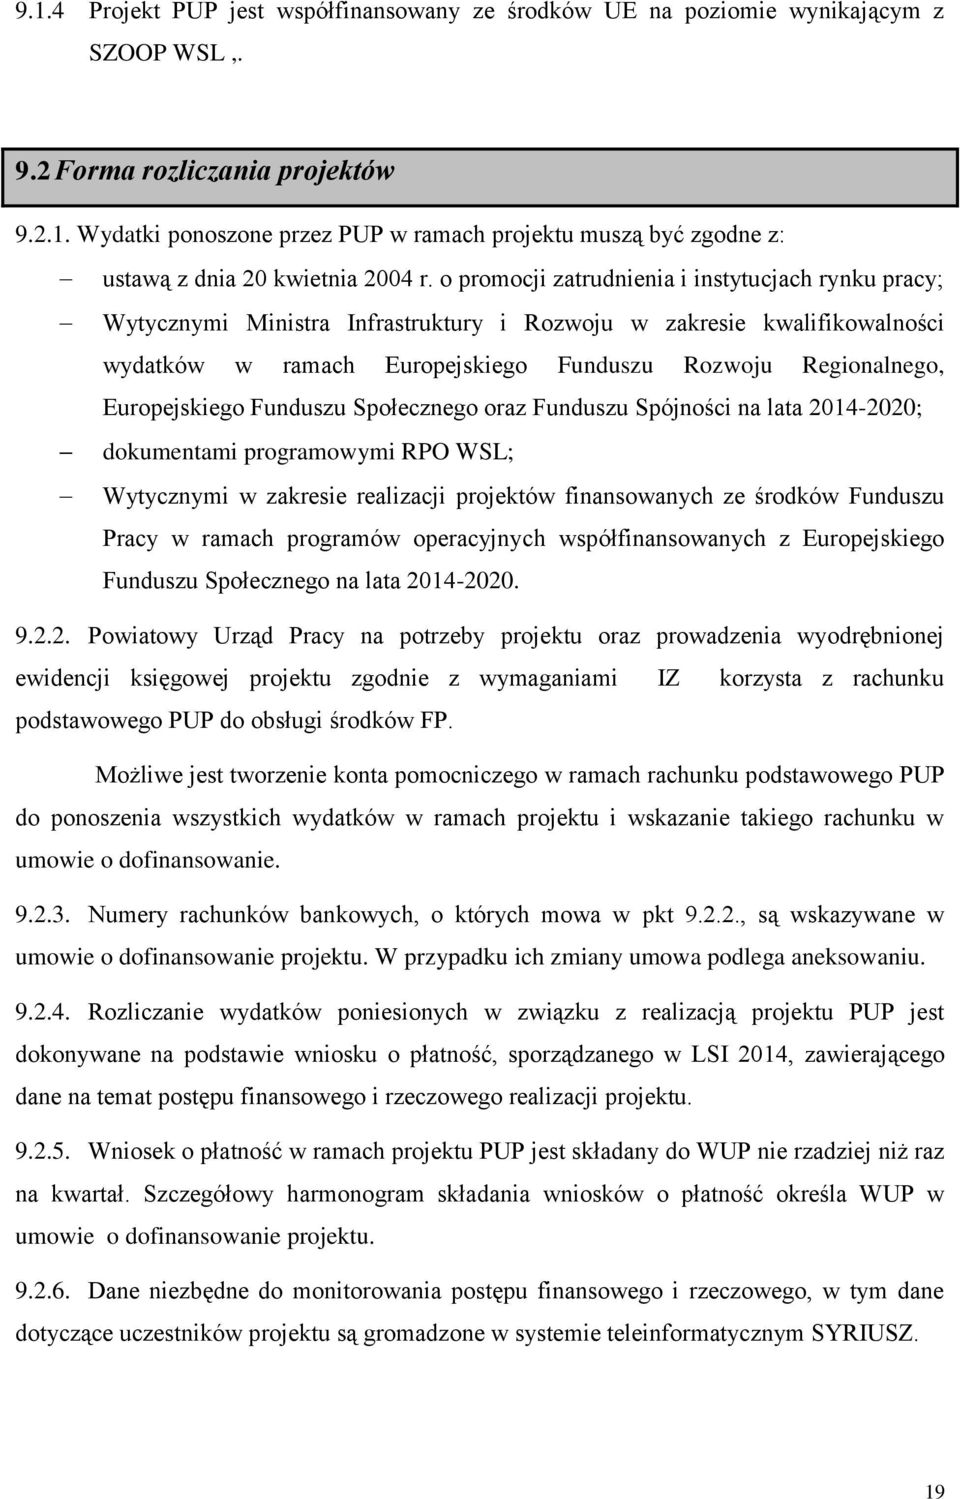 Europejskiego Funduszu Społecznego oraz Funduszu Spójności na lata 2014-2020; dokumentami programowymi RPO WSL; Wytycznymi w zakresie realizacji projektów finansowanych ze środków Funduszu Pracy w